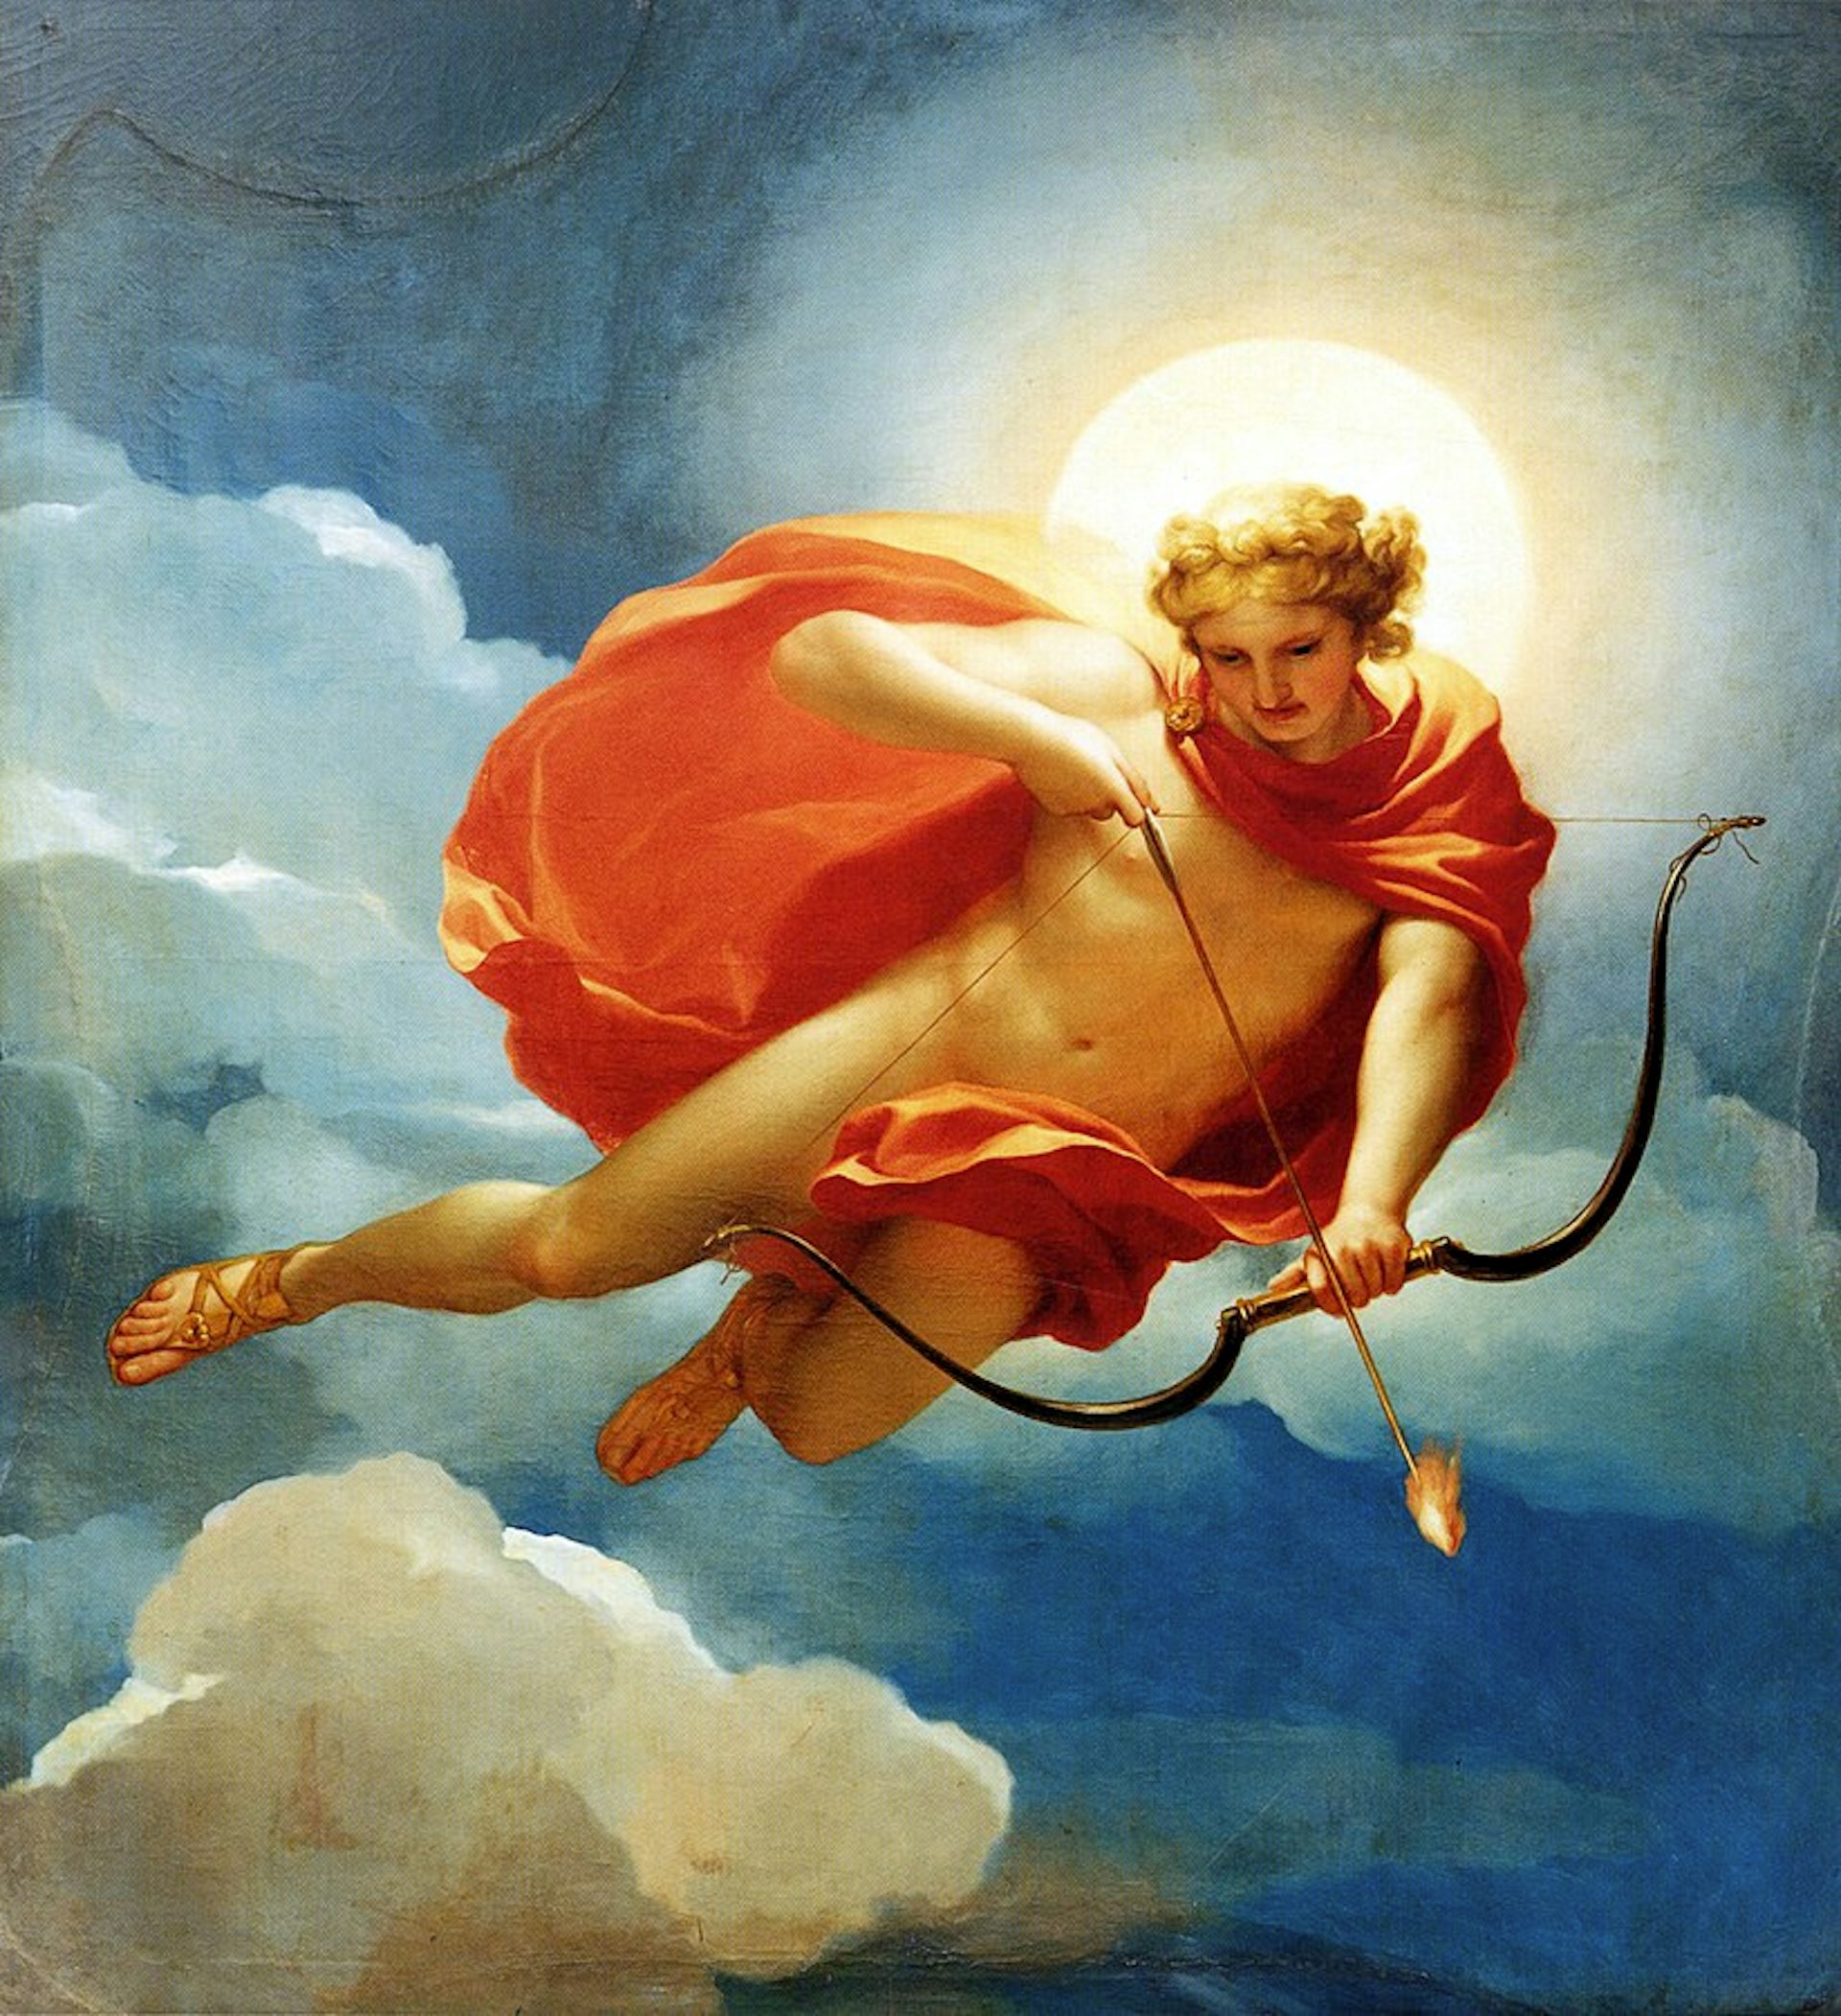 helios the sun god god of war